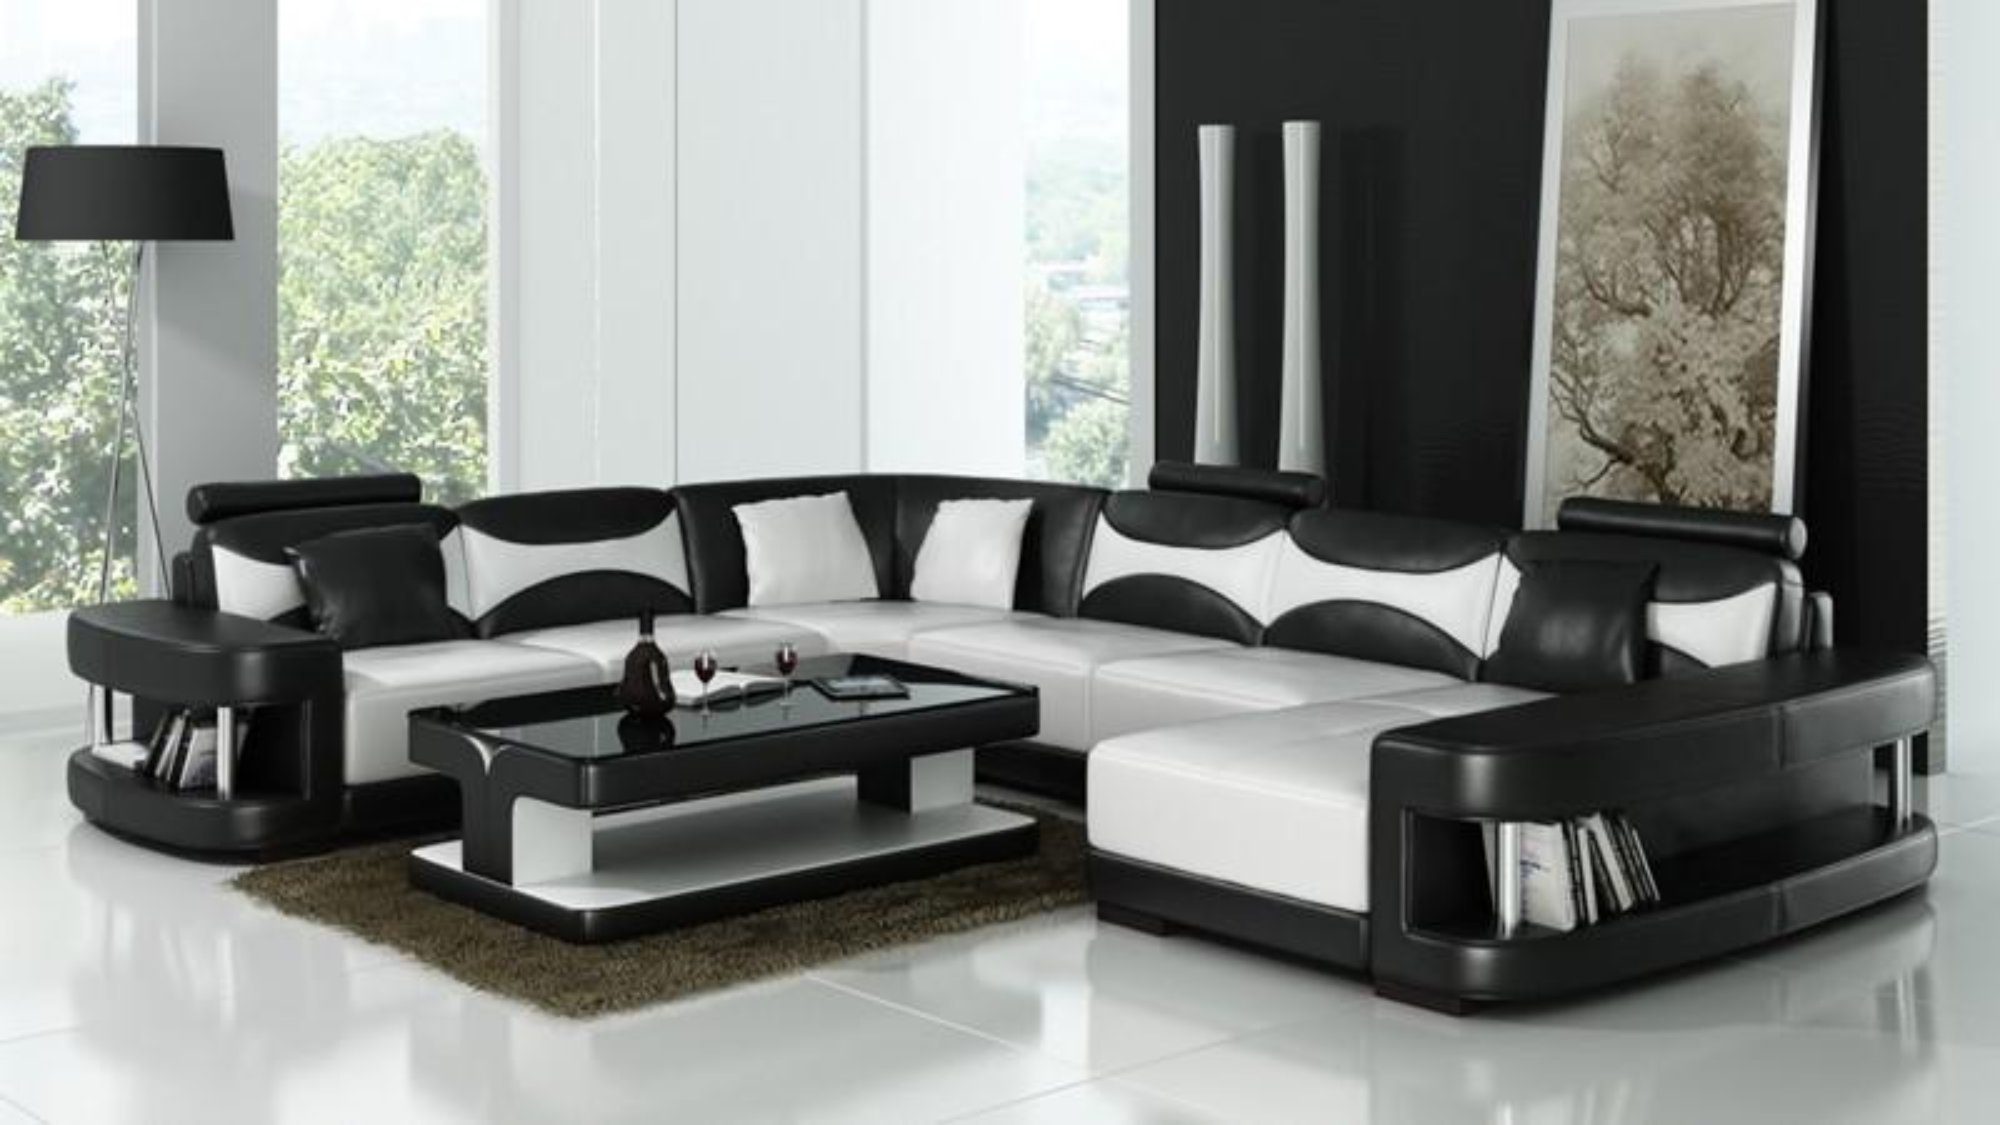 JVmoebel Ecksofa XXL Wohnlandschaft U Sofas, Europe Ecksofa Made Leder Sofa in Polster Schwarz/Weiß Form Couch